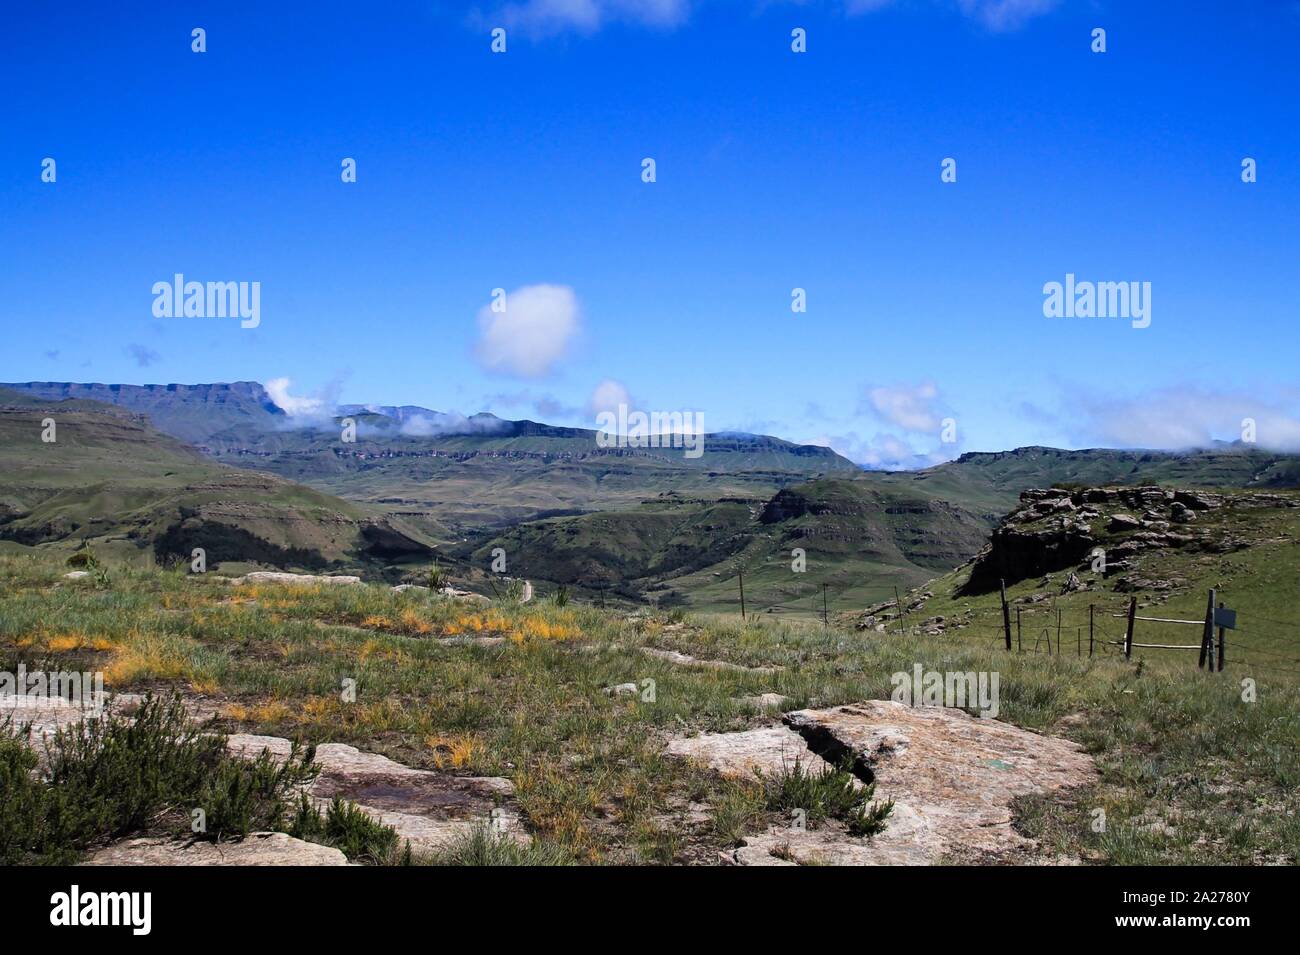 Weiter Blick über aufragende Felsen in den Drakensbergen Südafrikas Foto Stock